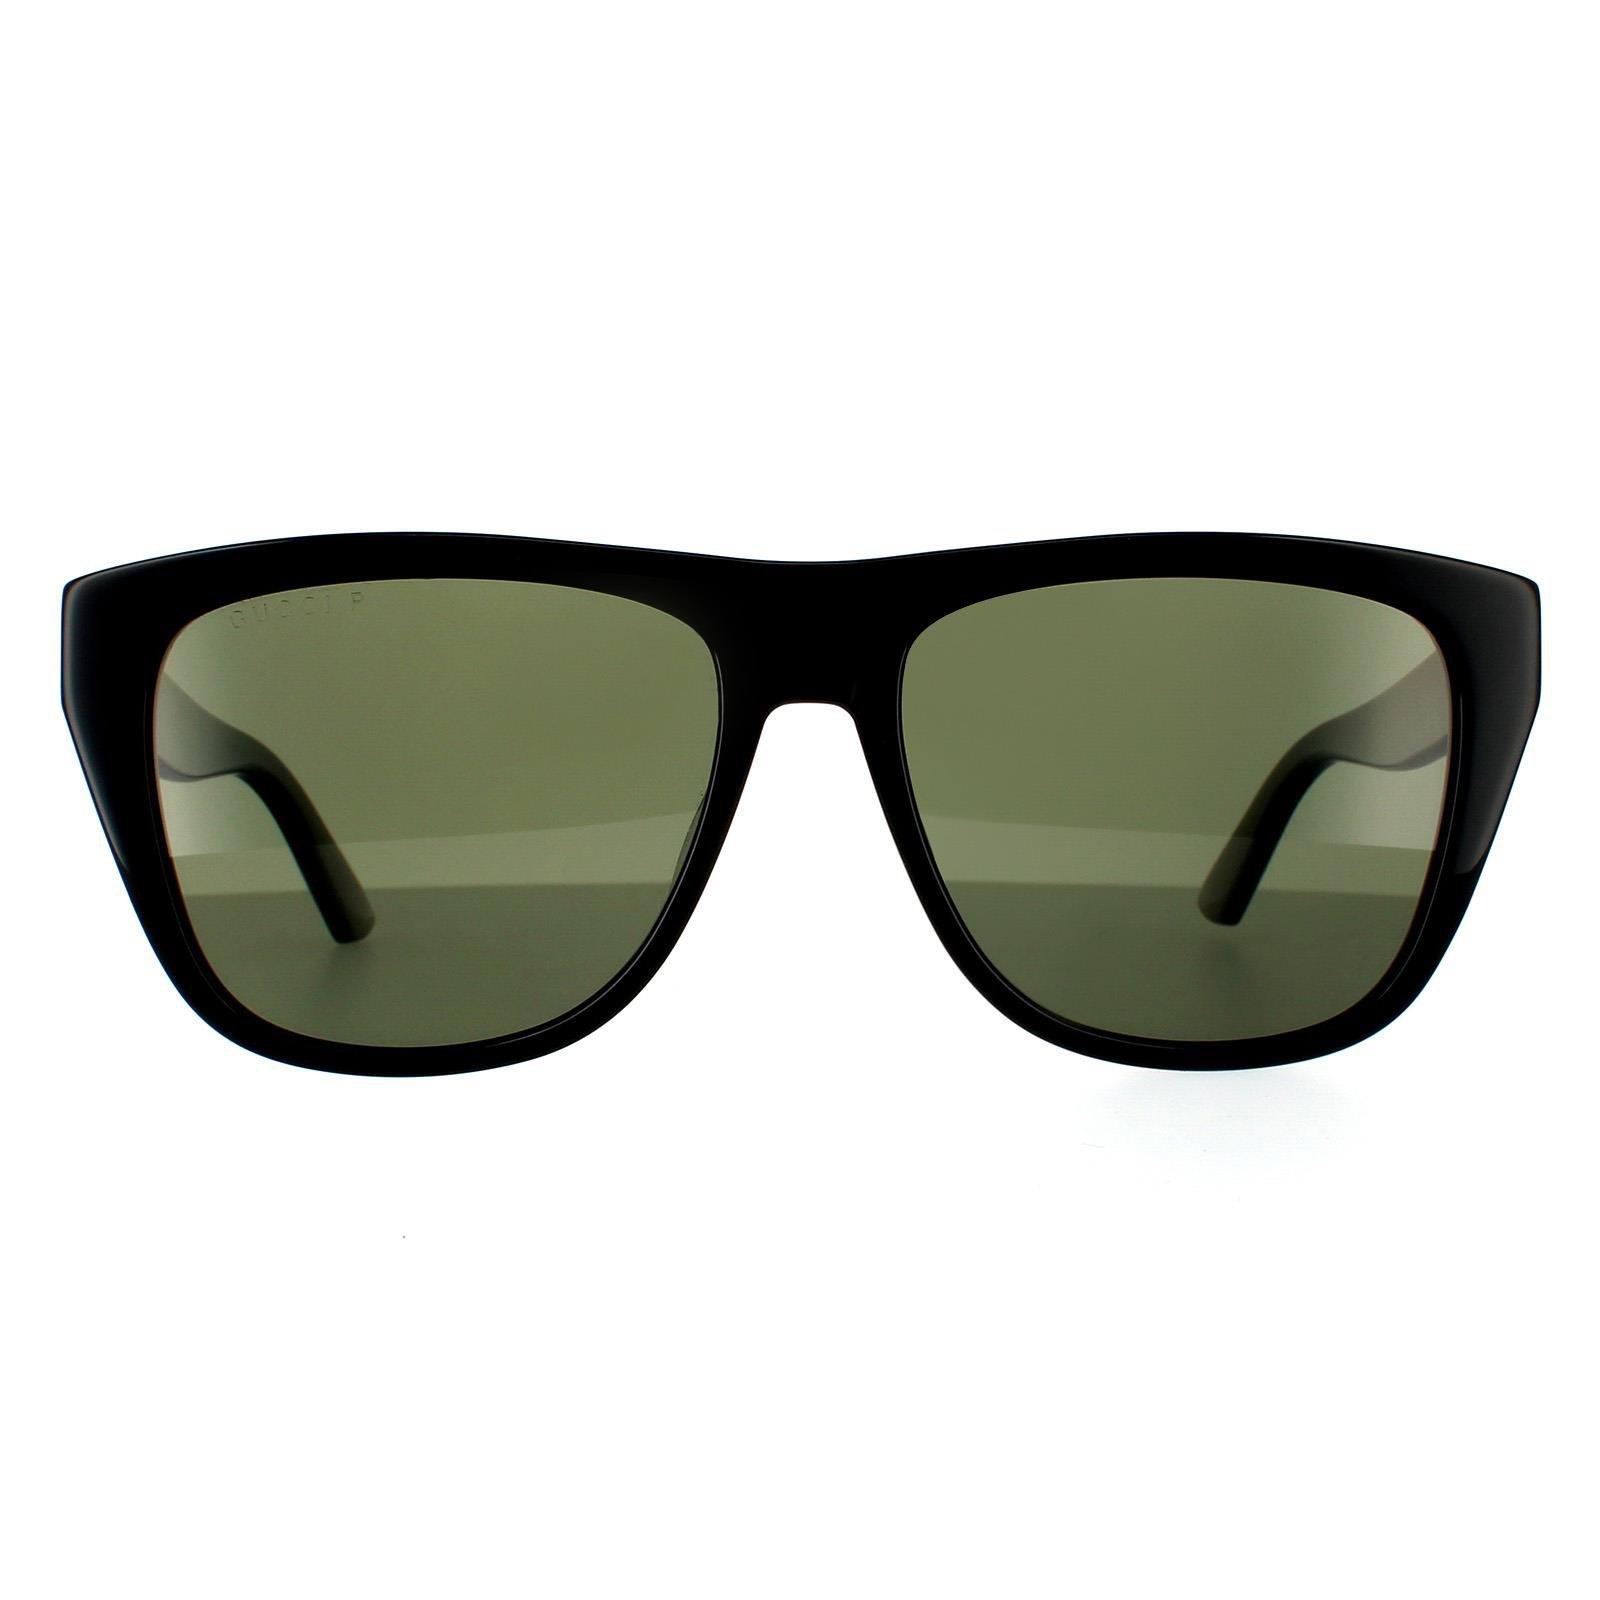 Солнцезащитные очки GG0926S 005 Черные Зеленые Поляризованные Gucci, черный солнцезащитные очки gg0926s 005 черные зеленые поляризованные gucci черный